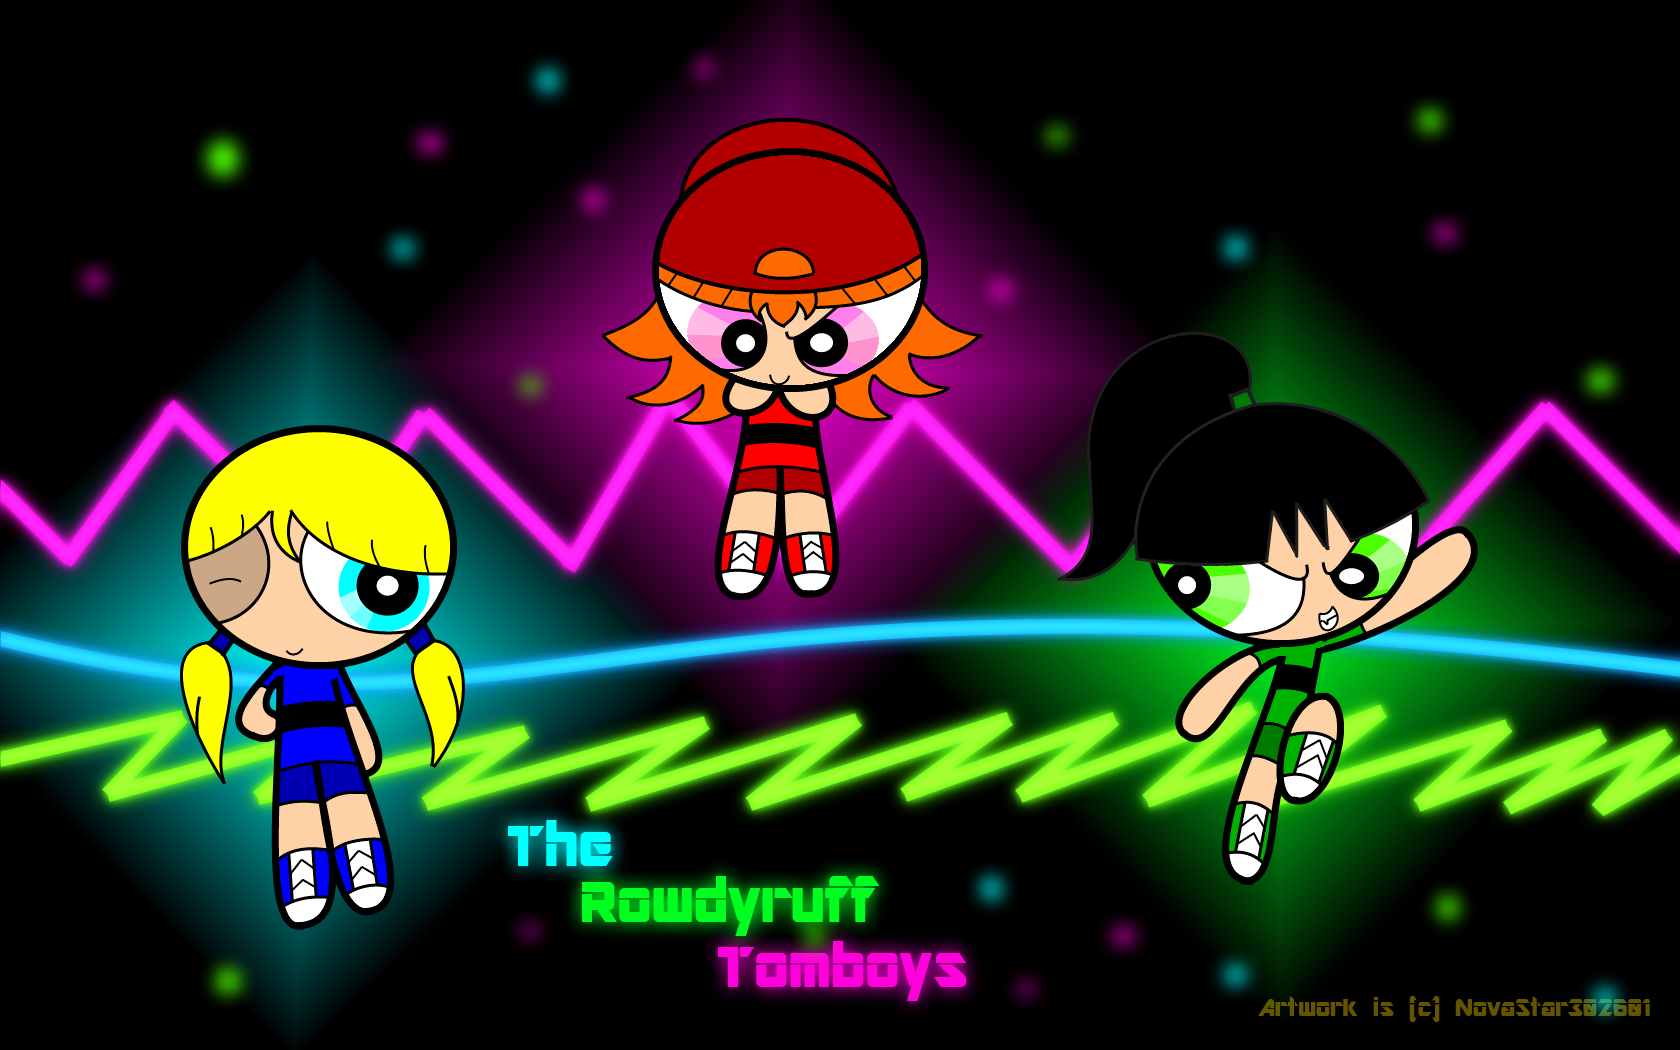 Hình nền nền Rowdyruff Tomboys – Mẫu hình nền này sẽ đưa bạn đến với thế giới của ba cô bé Tomboy đầy nghịch ngợm và đáng yêu được yêu thích trong loạt phim hoạt hình nổi tiếng The Powerpuff Girls.